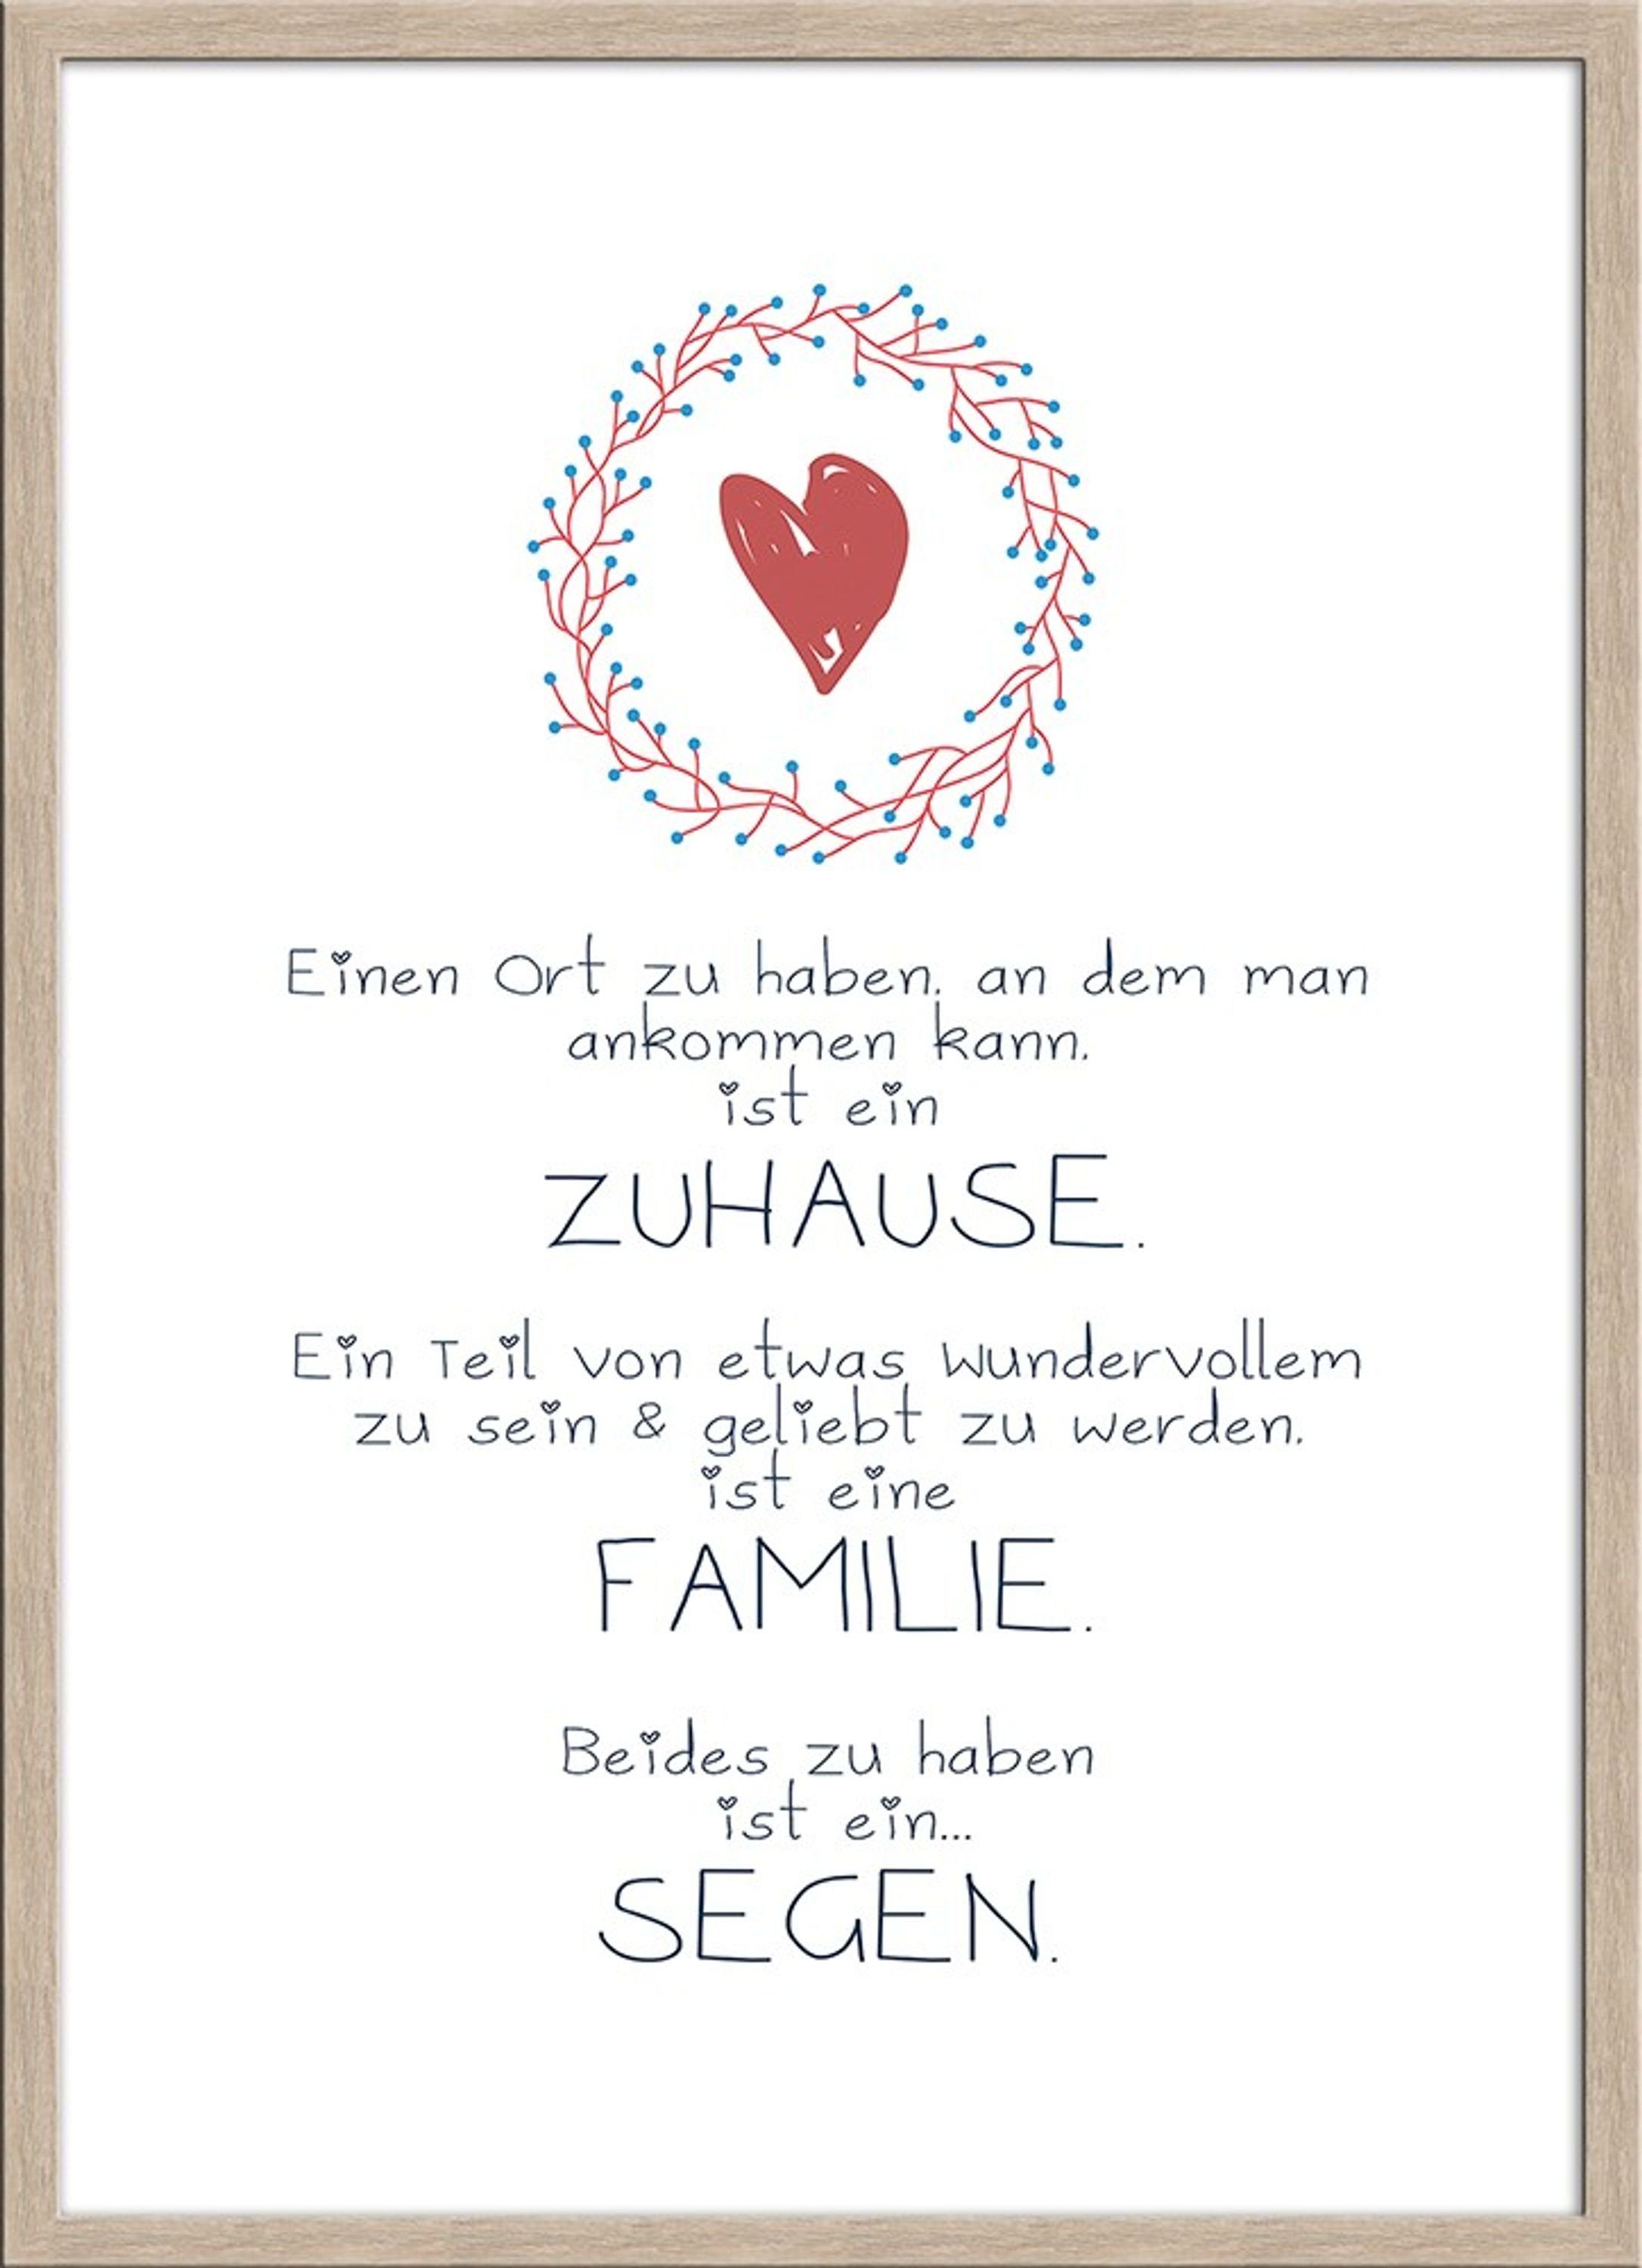 Sprüche Bild / Zuhause inkl. Spruch 51x71cm Zitate: und Familie/ artissimo Poster Segen / Spruch-Bild mit gerahmt Rahmen mit Holz-Rahmen,